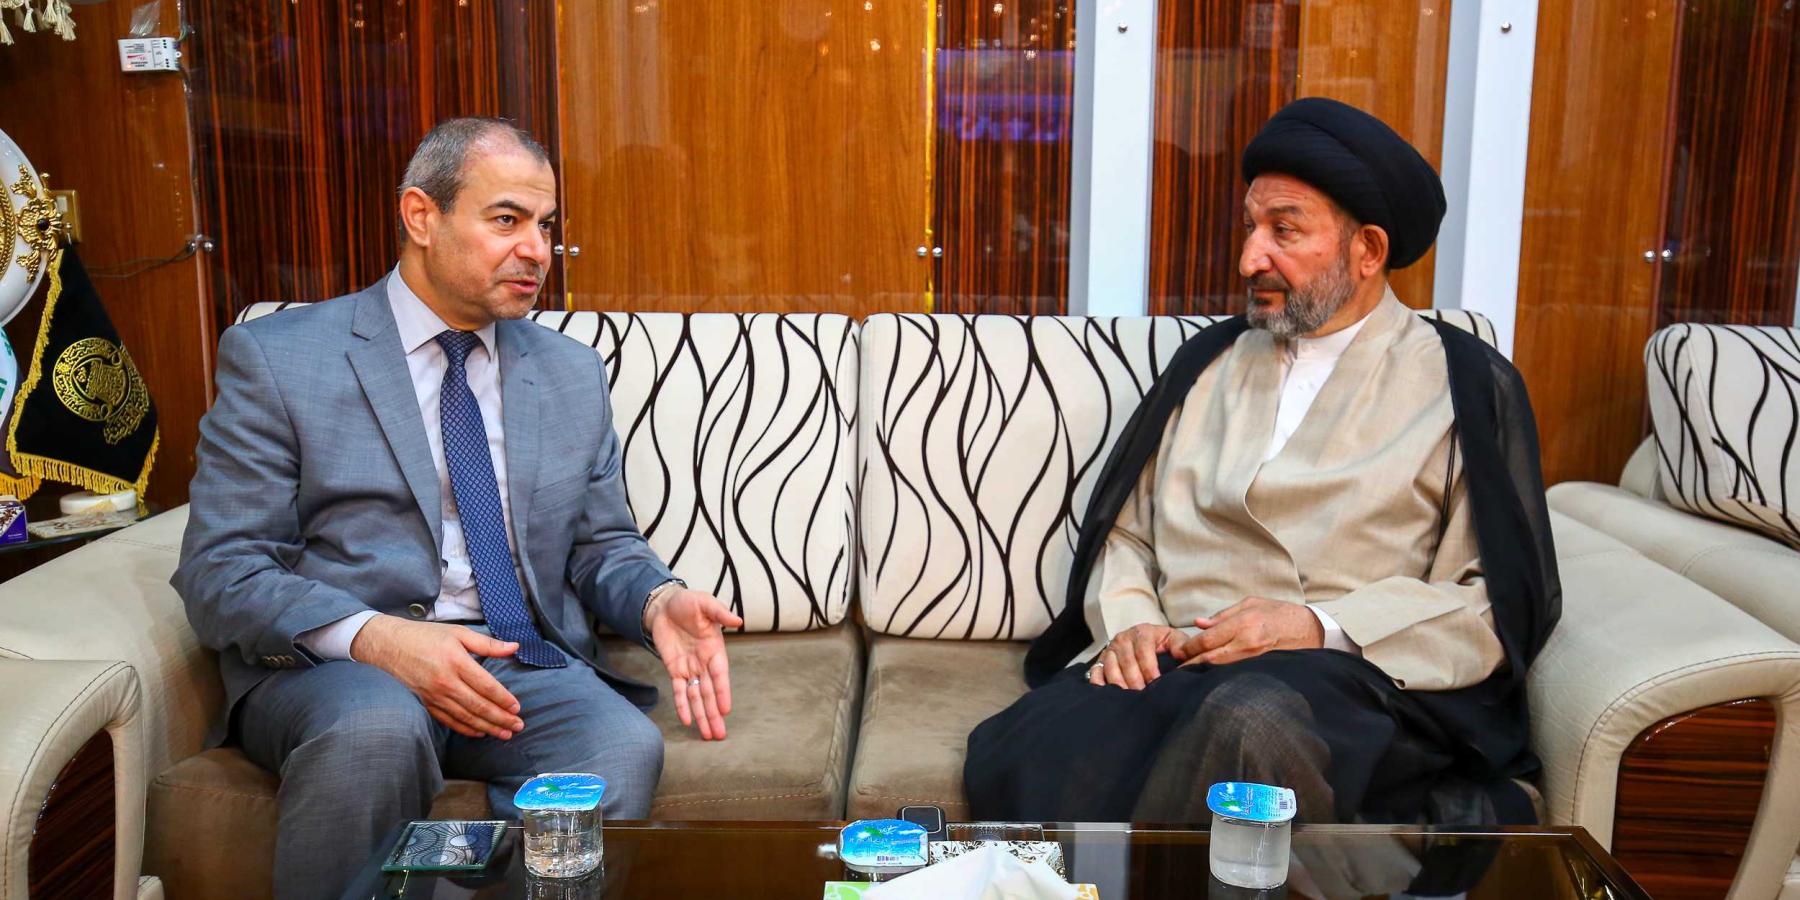 الدكتور علي الشكري يتشرف بزيارة مرقد الإمام علي(ع) ويلتقي بالأمين العام للعتبة العلوية المقدسة